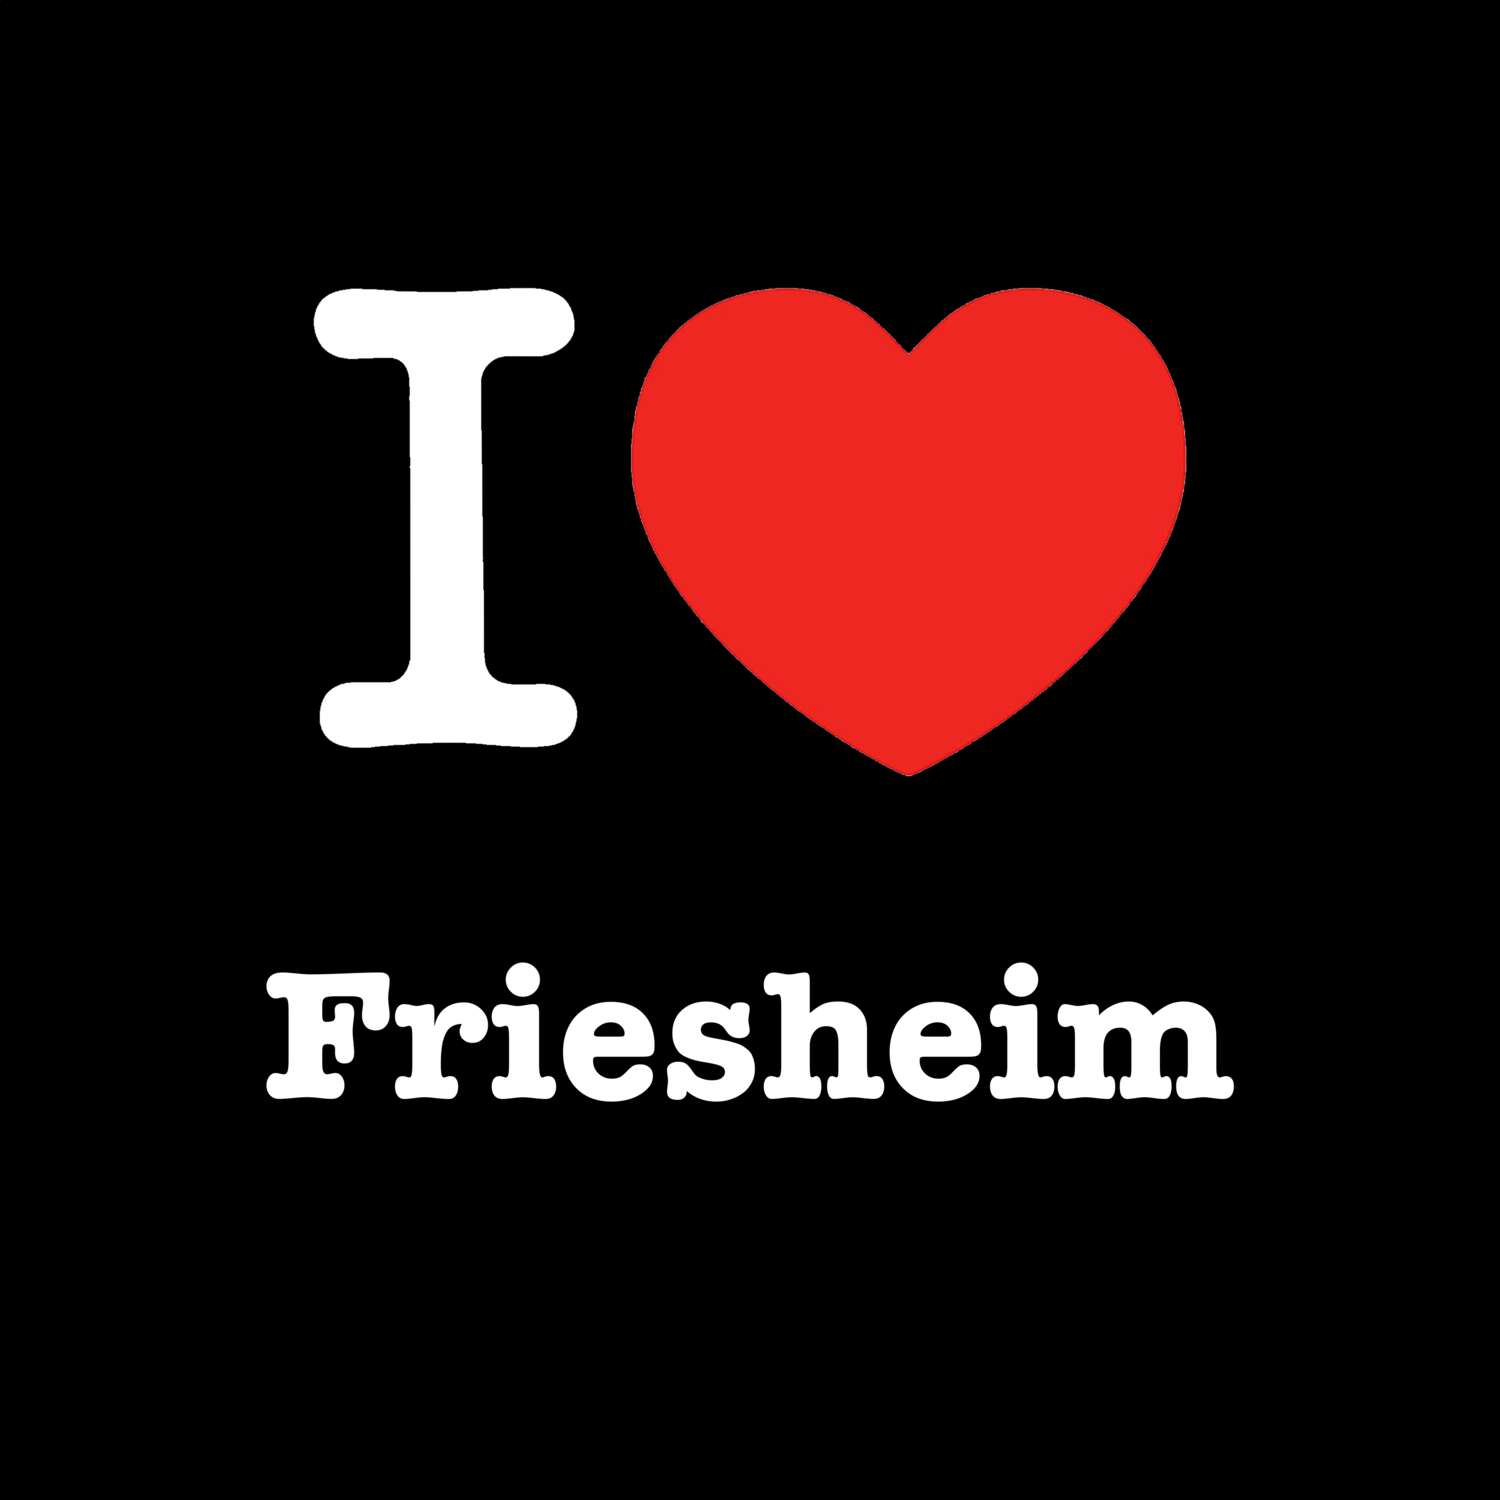 Friesheim T-Shirt »I love«